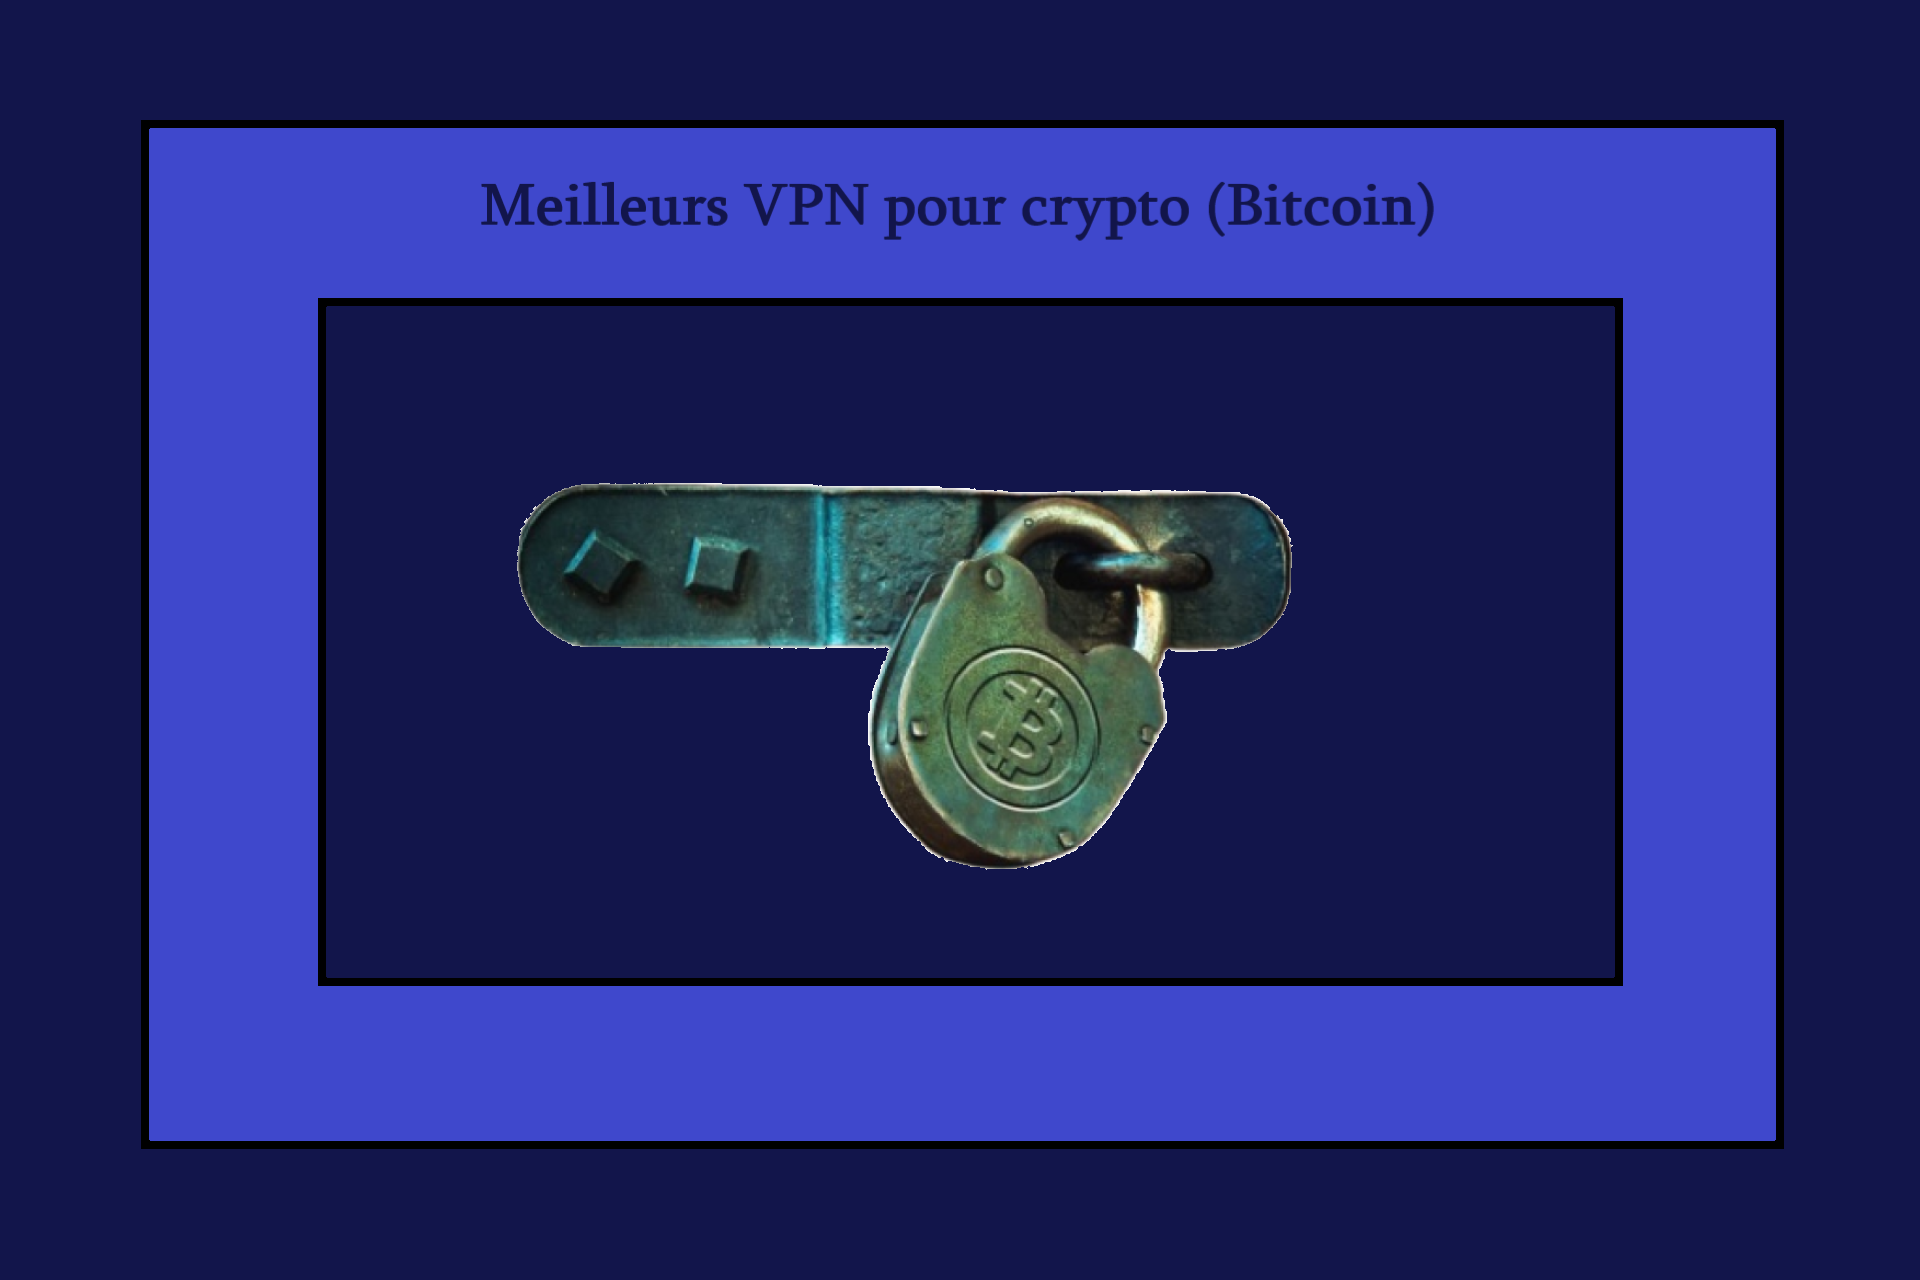 VPN pour crypto